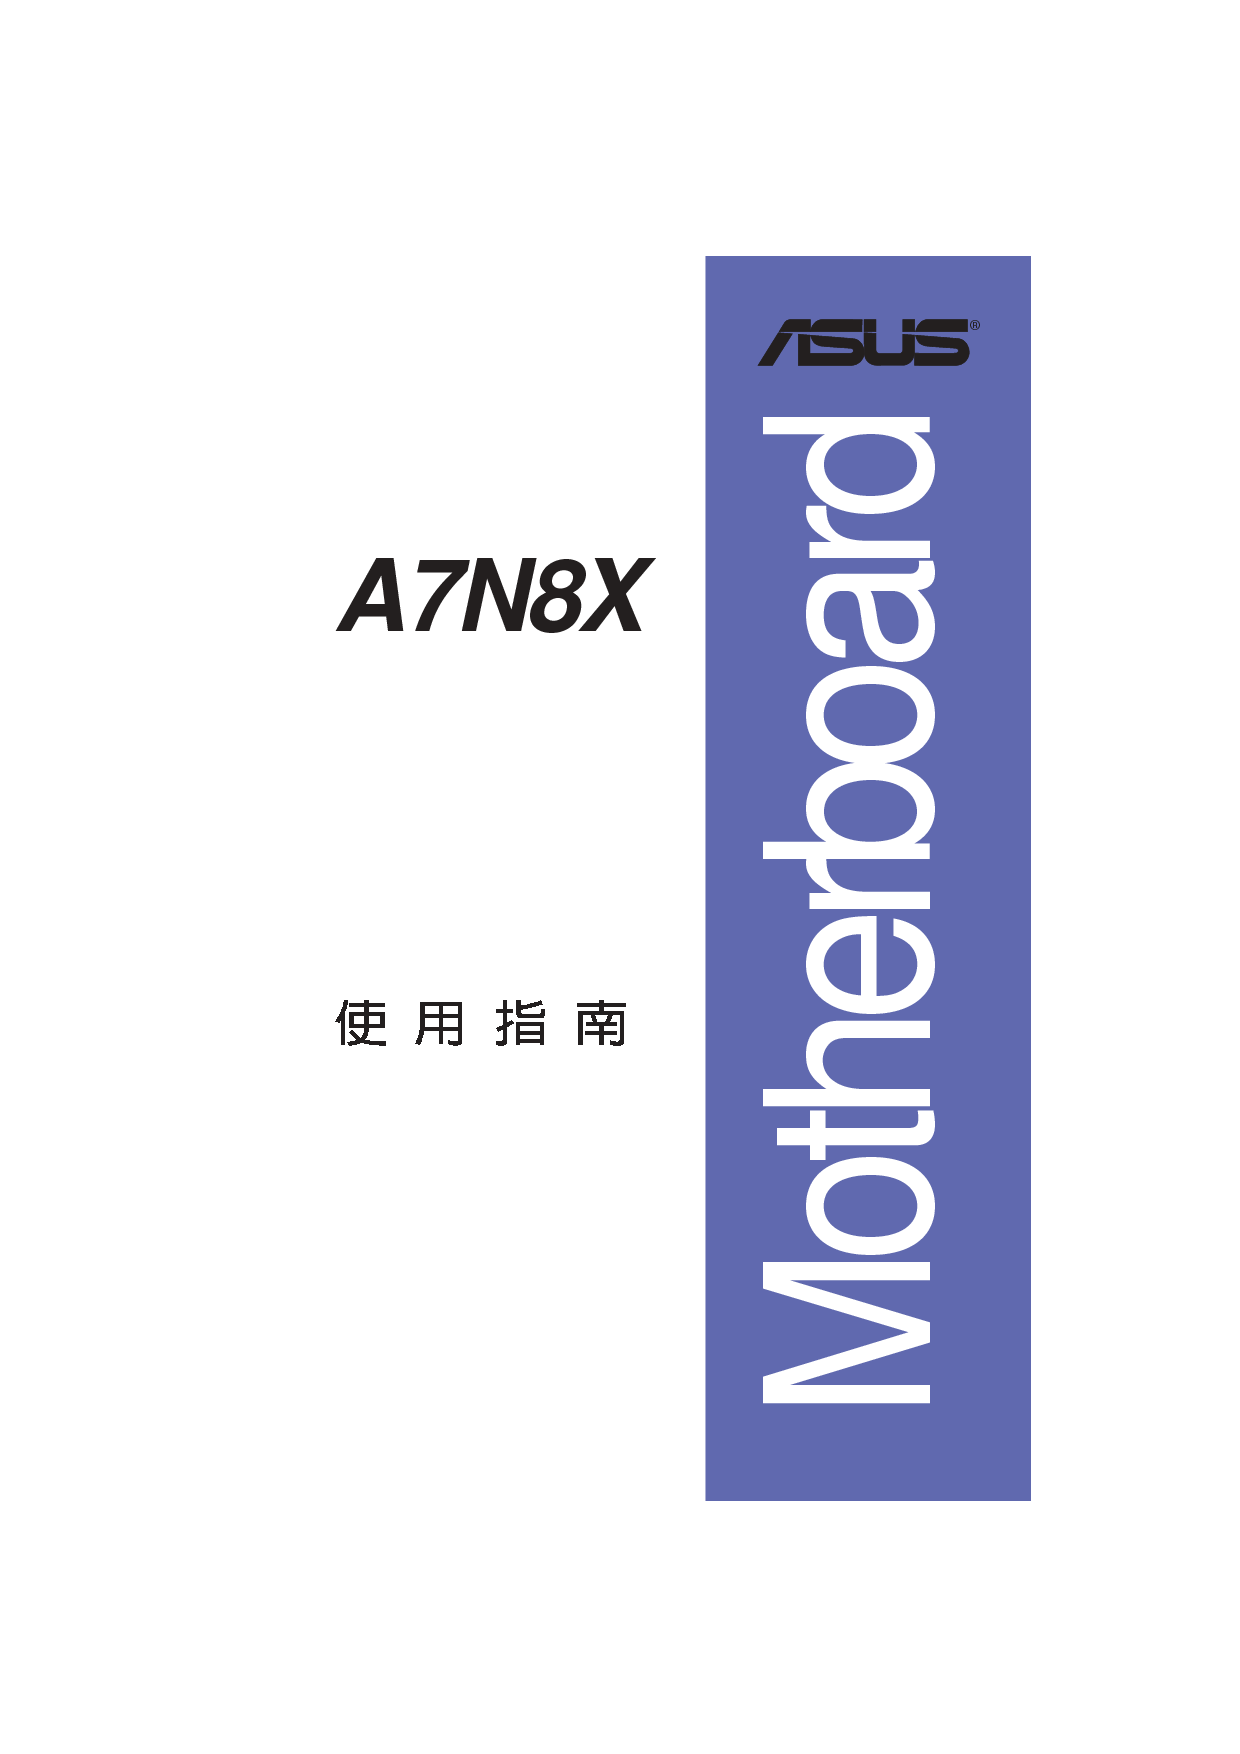 华硕 Asus A7N8X 用户手册 封面